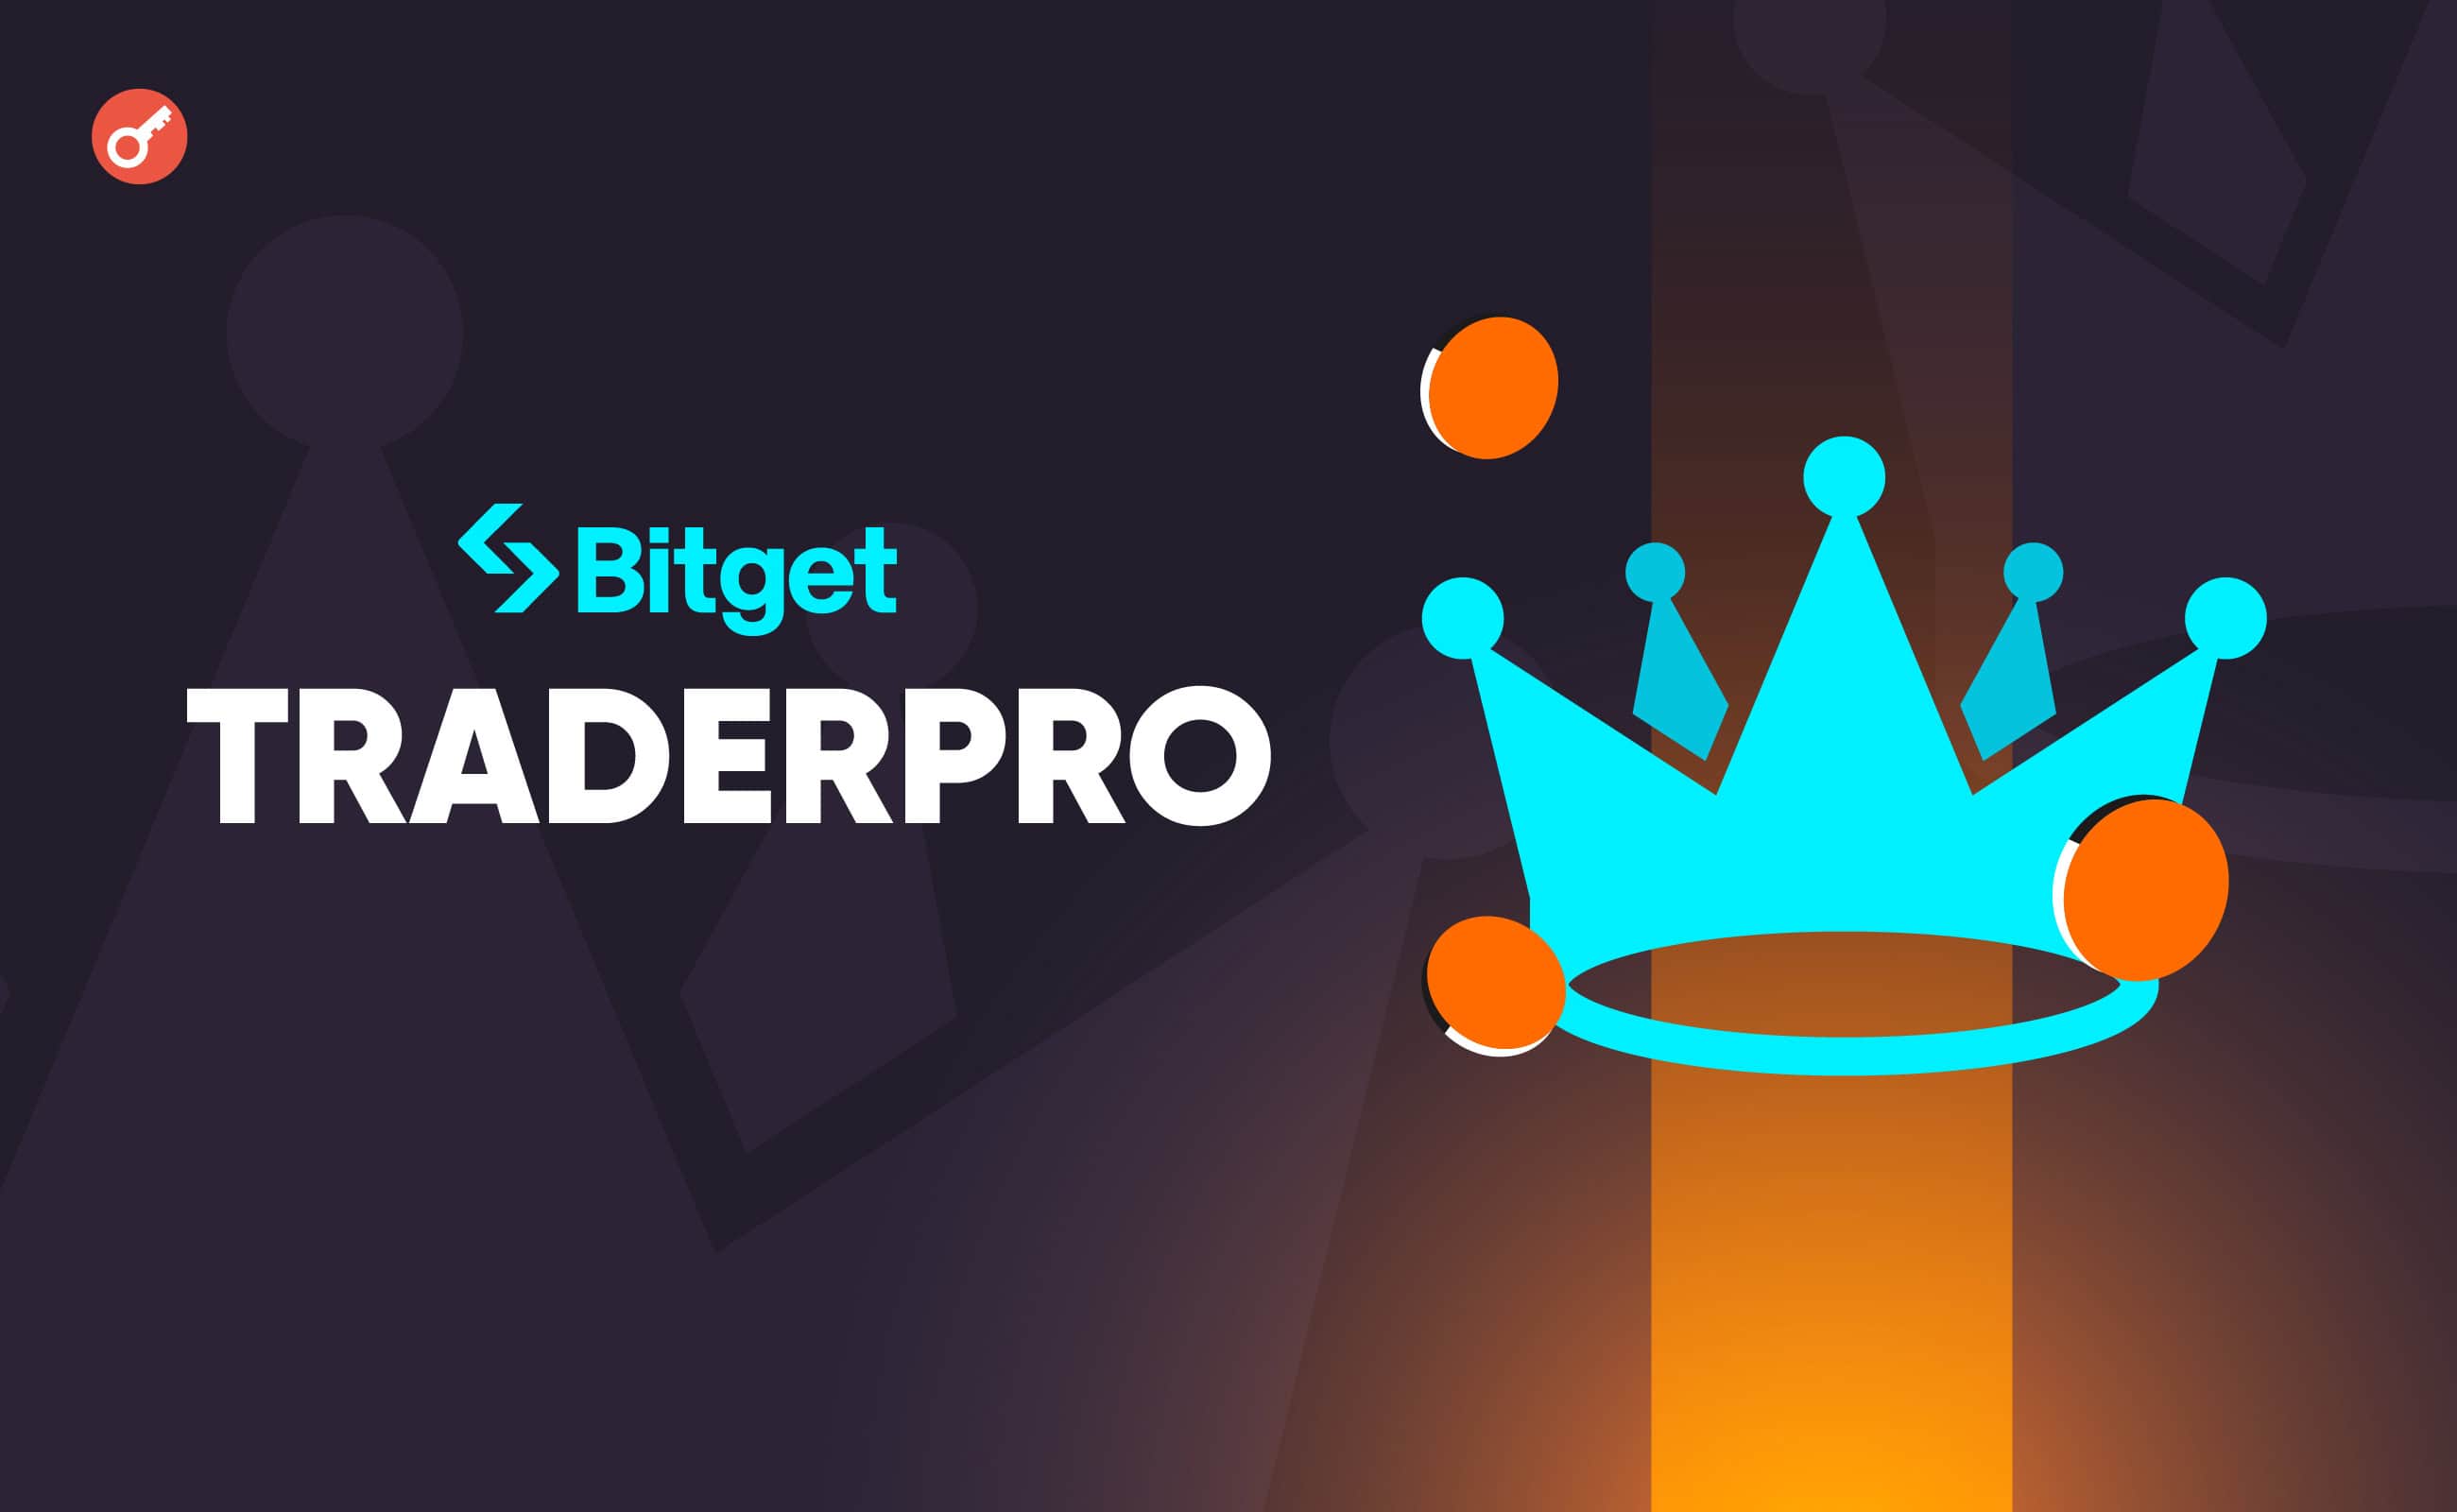 Bitget представила второй сезон программы TraderPro с призовыми в 10 000 USDT. Заглавный коллаж новости.